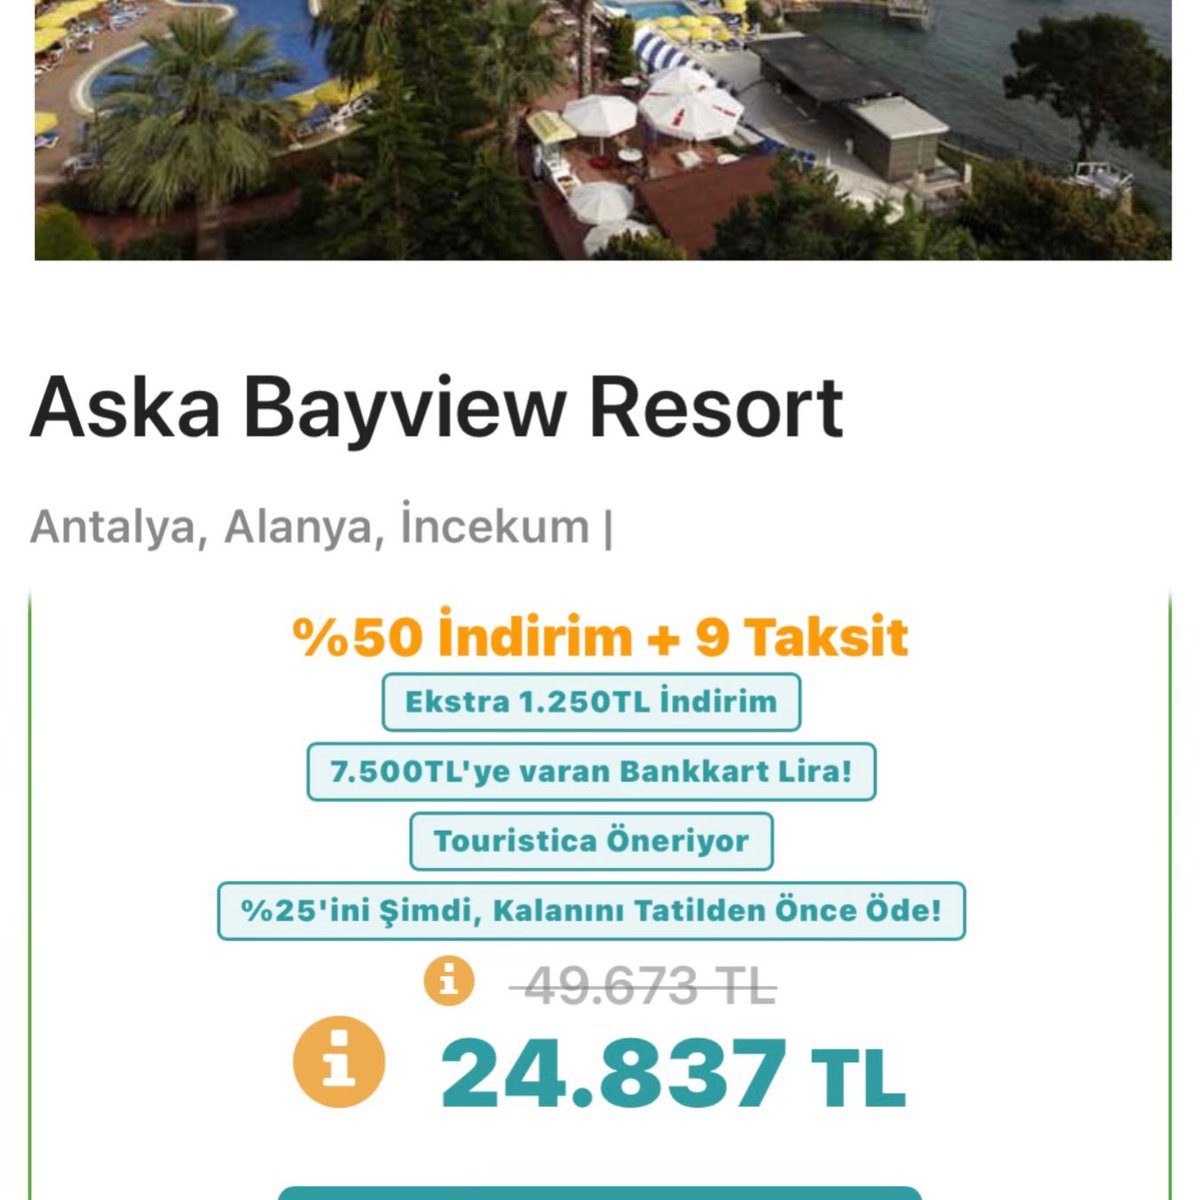 Oteller Türklük bedeli almaya devam ediyor.

'Aska Bayview Resort'